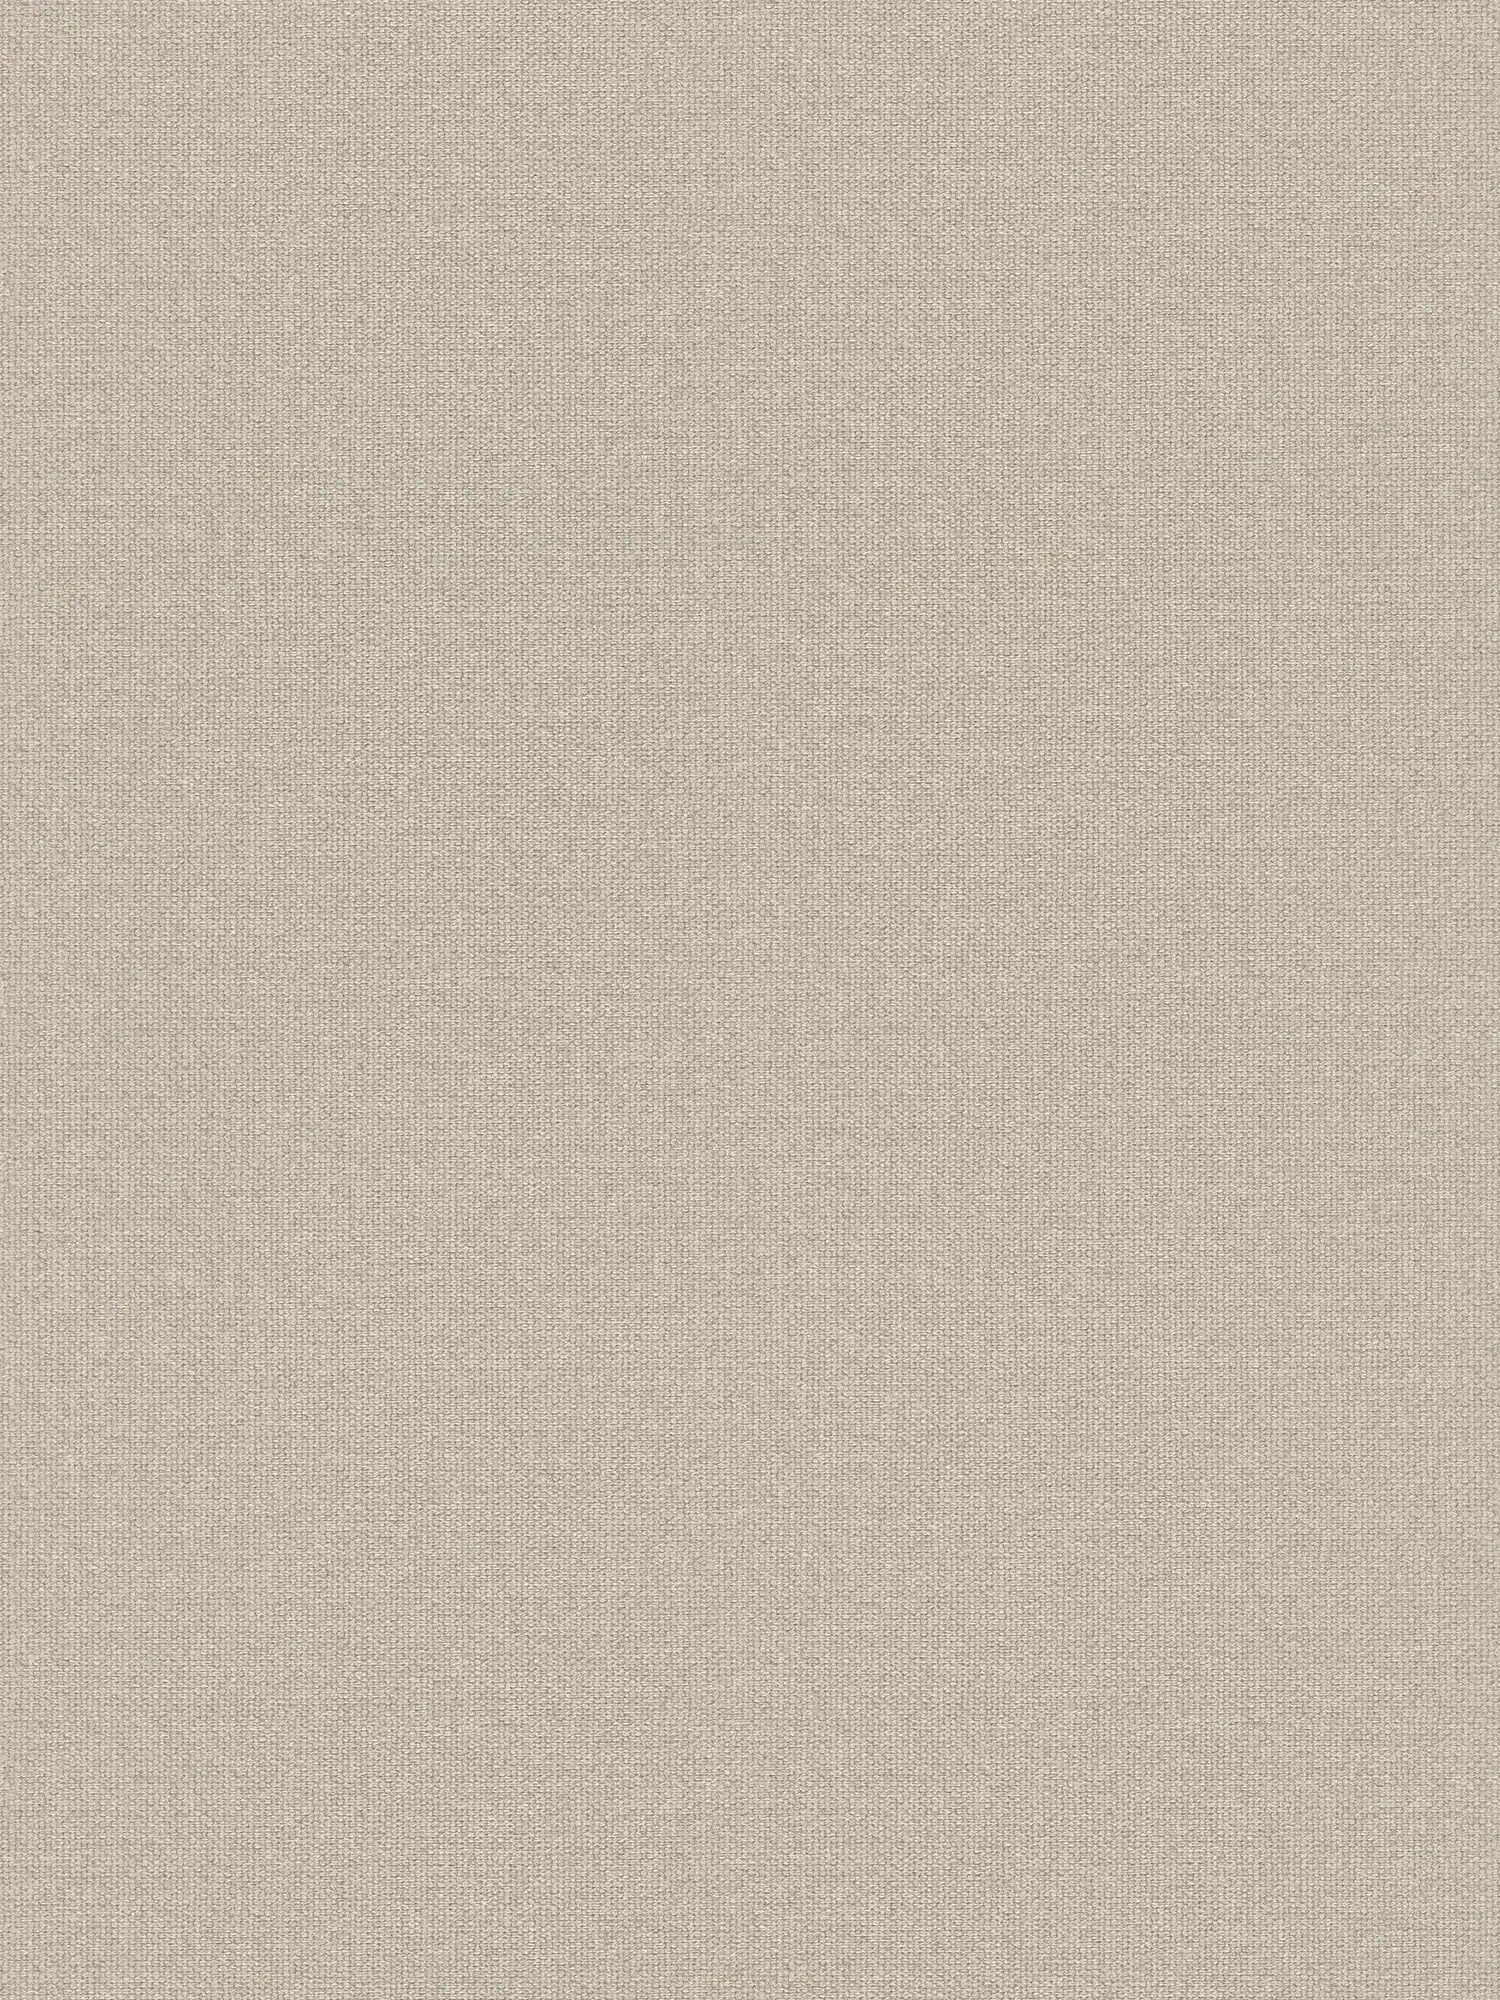 Papel pintado de aspecto de lino con superficie texturizada, liso - Beige, Gris
